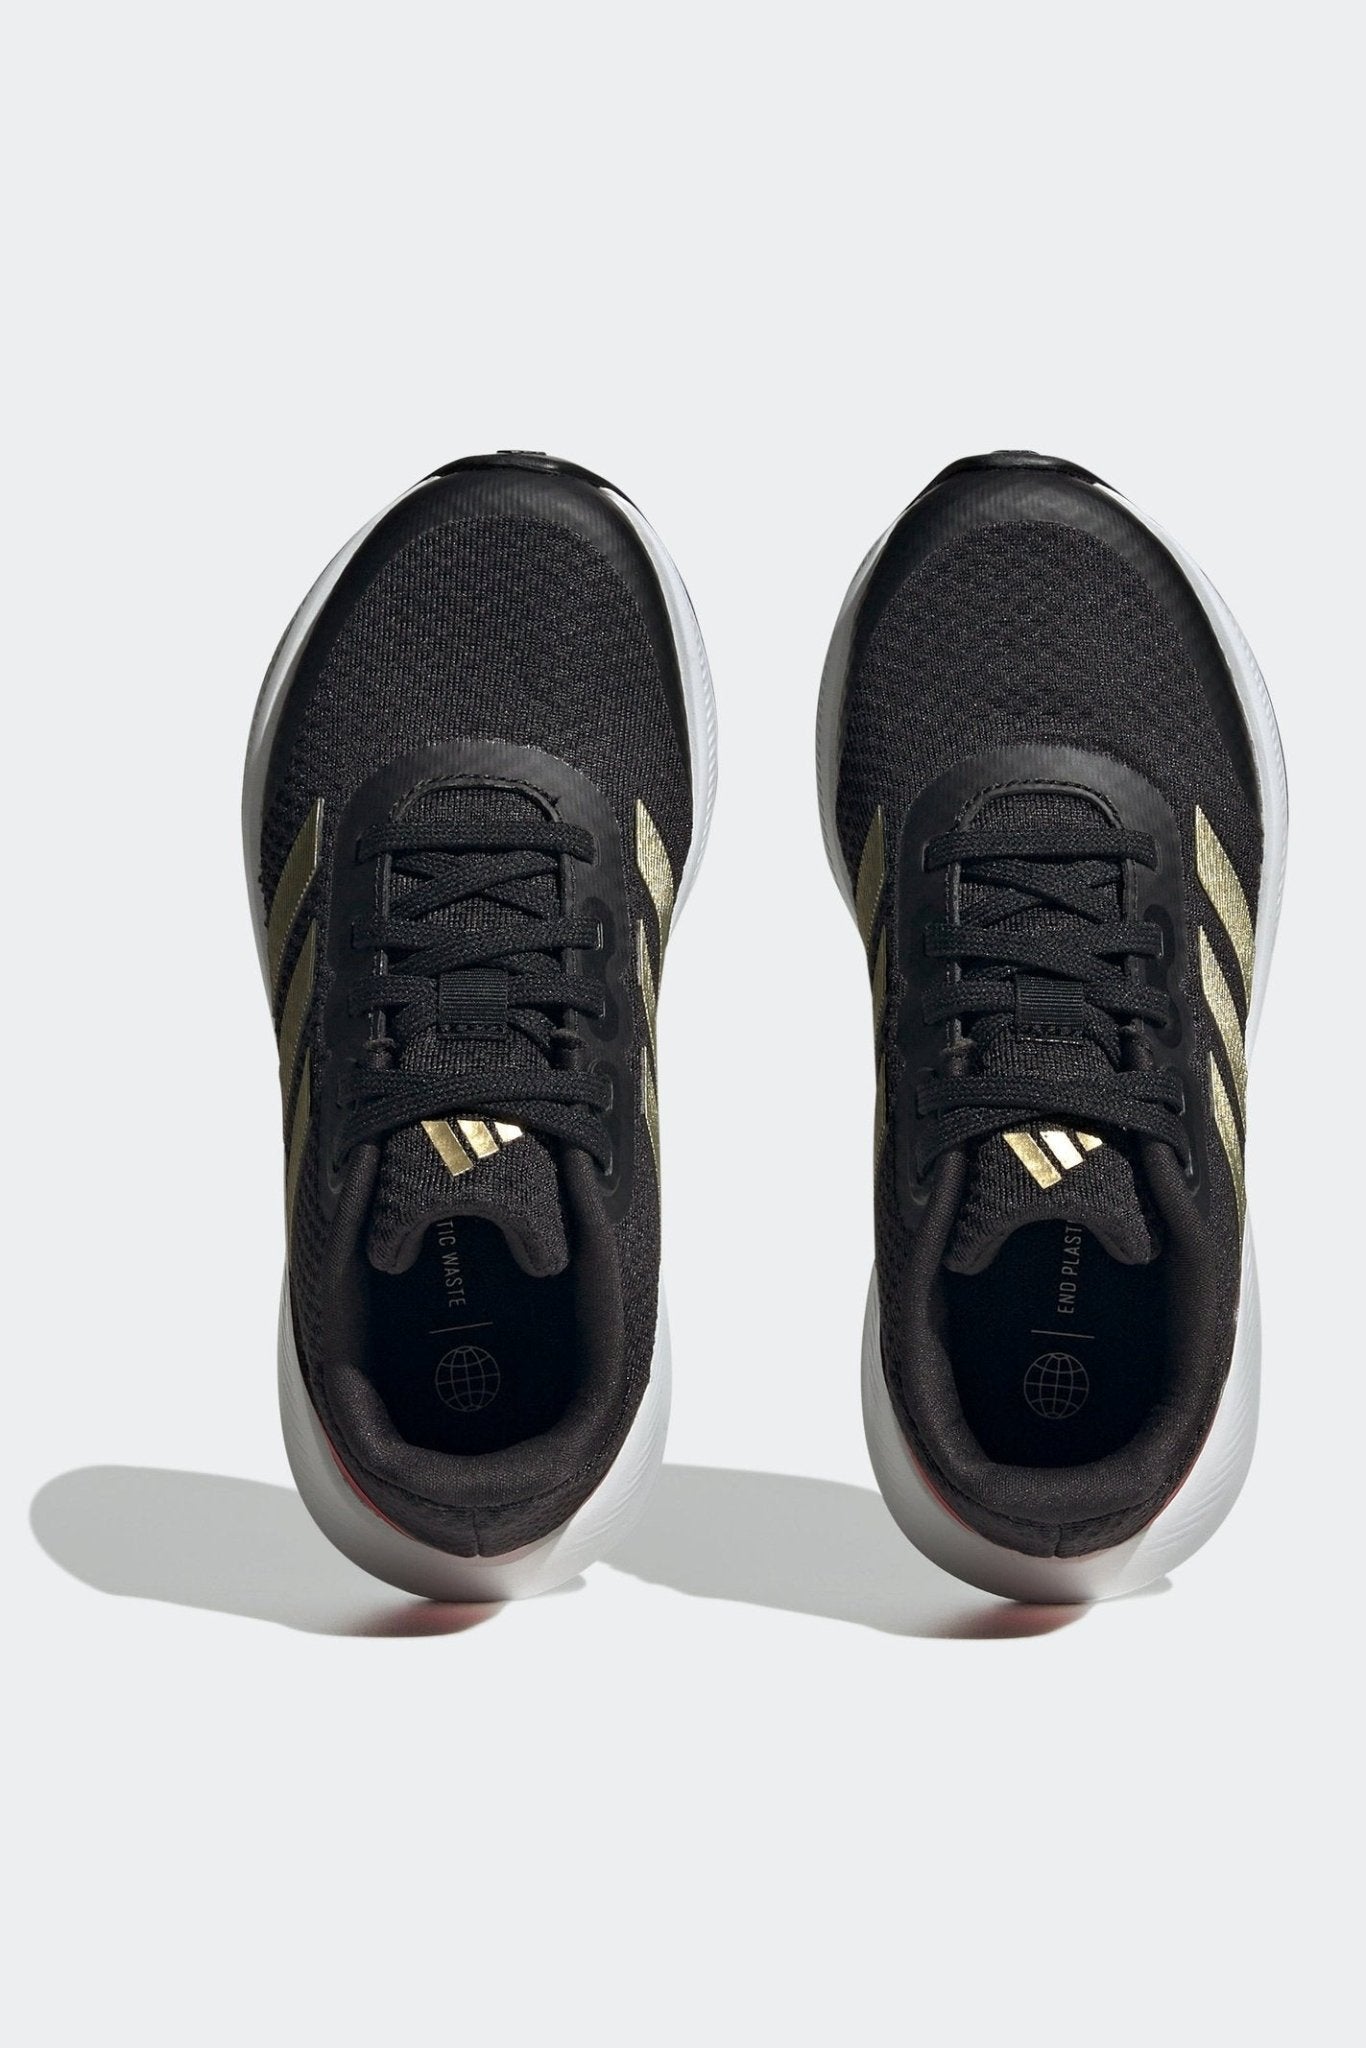 ADIDAS - נעלי ספורט לנשים ונוער RUNFALCON 3.0 בצבע שחור וזהב - MASHBIR//365